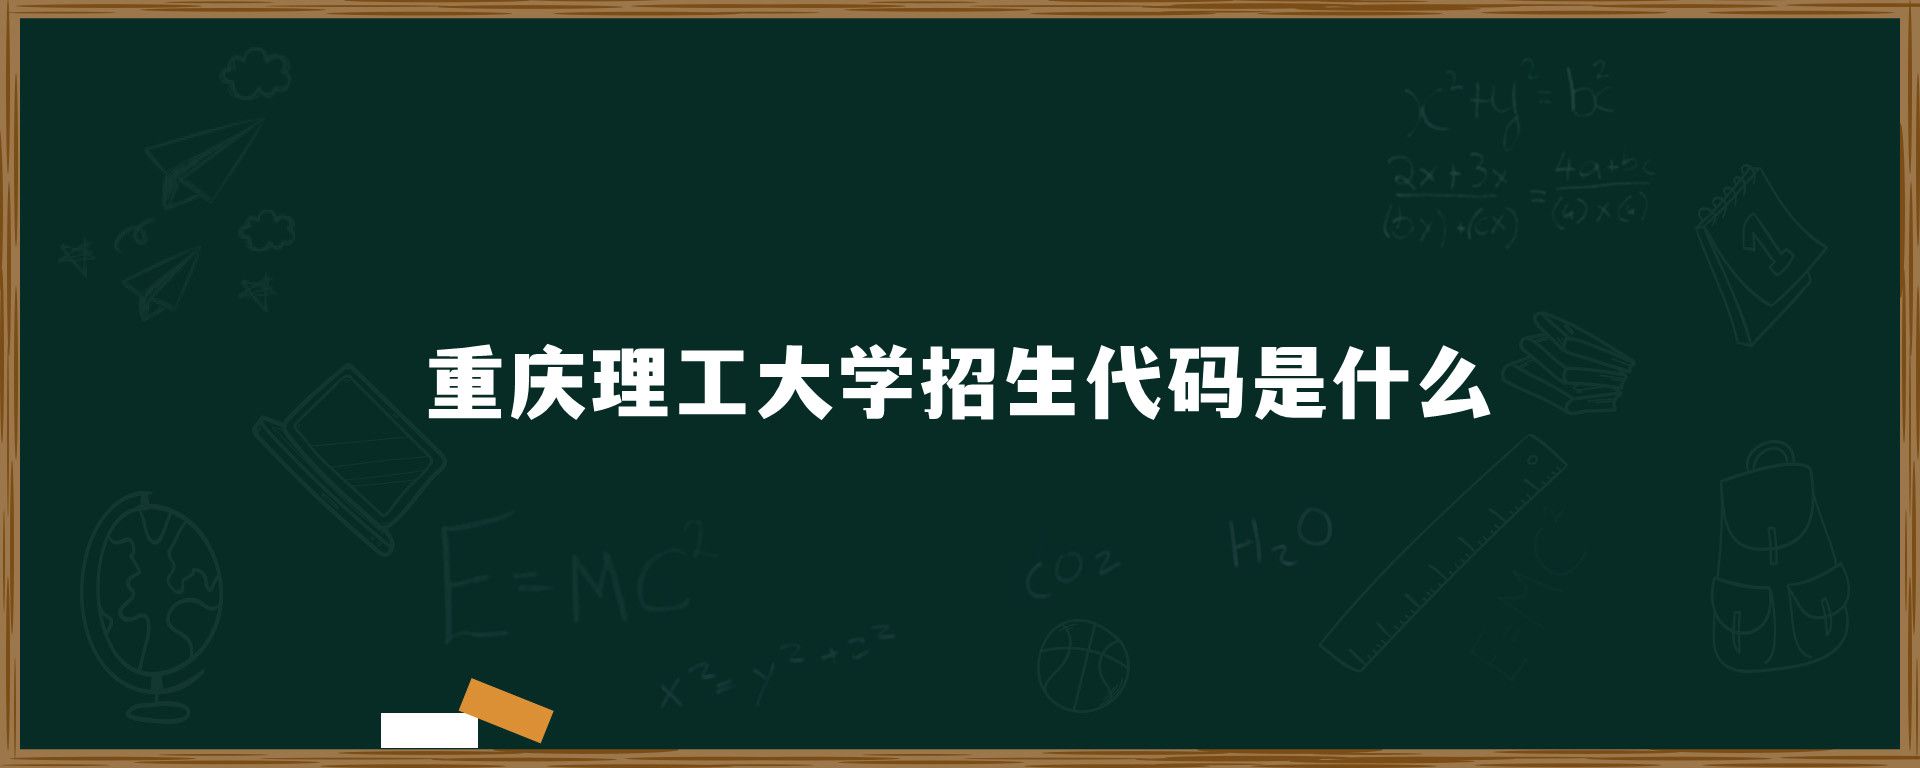 重庆理工大学招生代码是什么